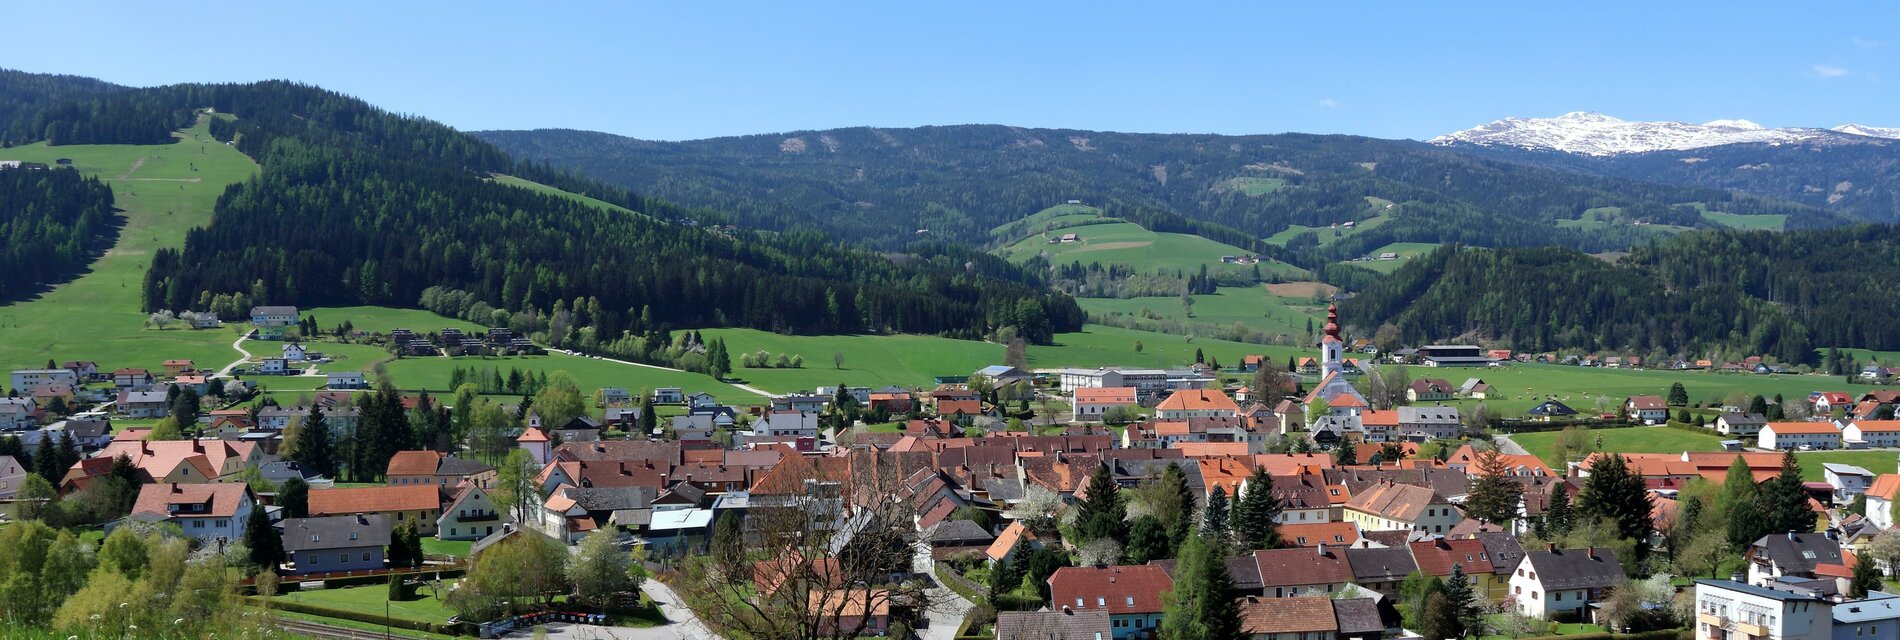 ApartmentsObdach-Aussicht-Murtal-Steiermark